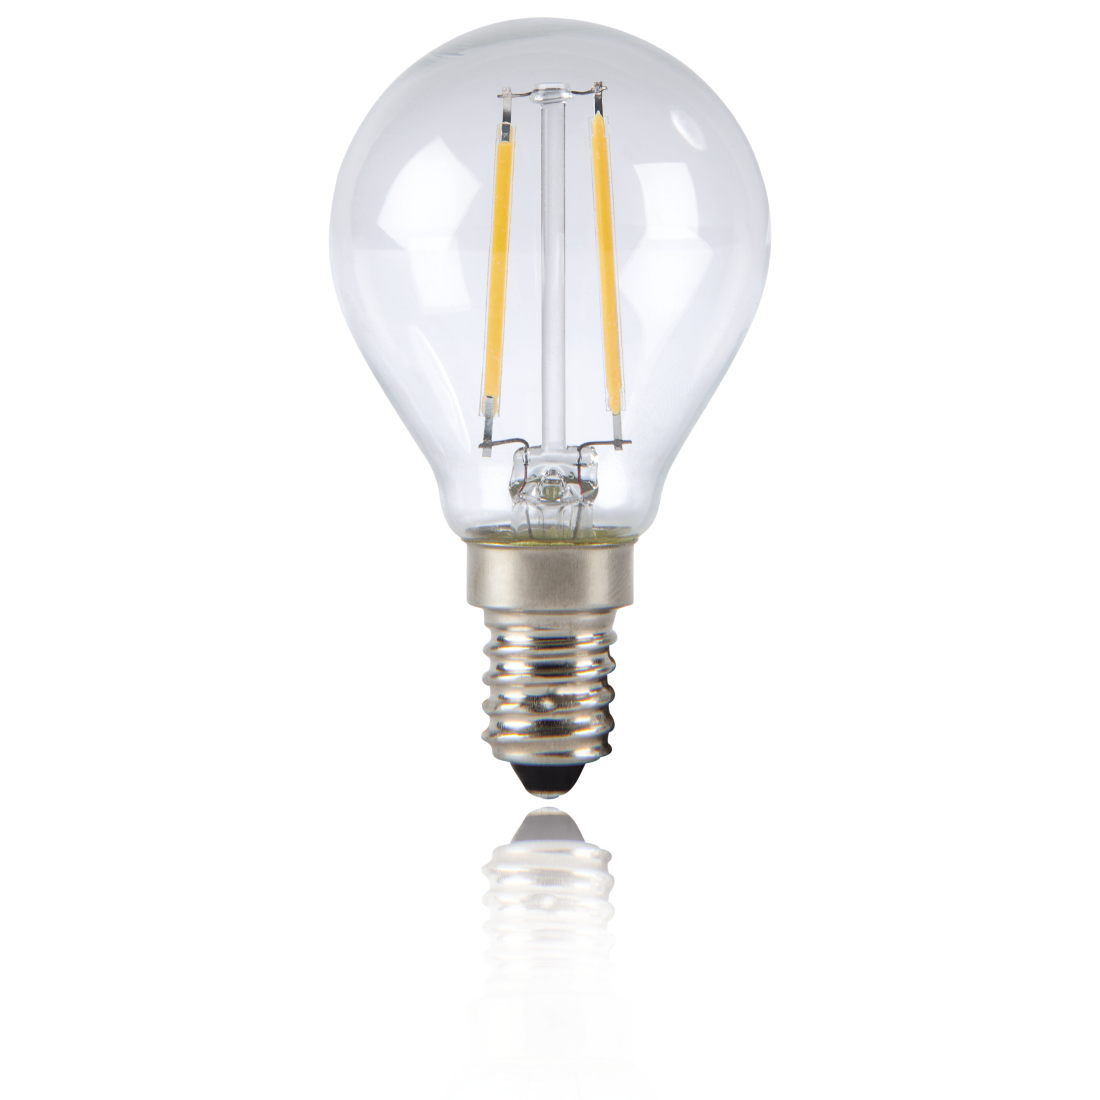 abx2 High-Res Image 2 - Xavax, Ampoule filament à LED, E14, 250lm rempl. amp. sphérique 25W, blc chd